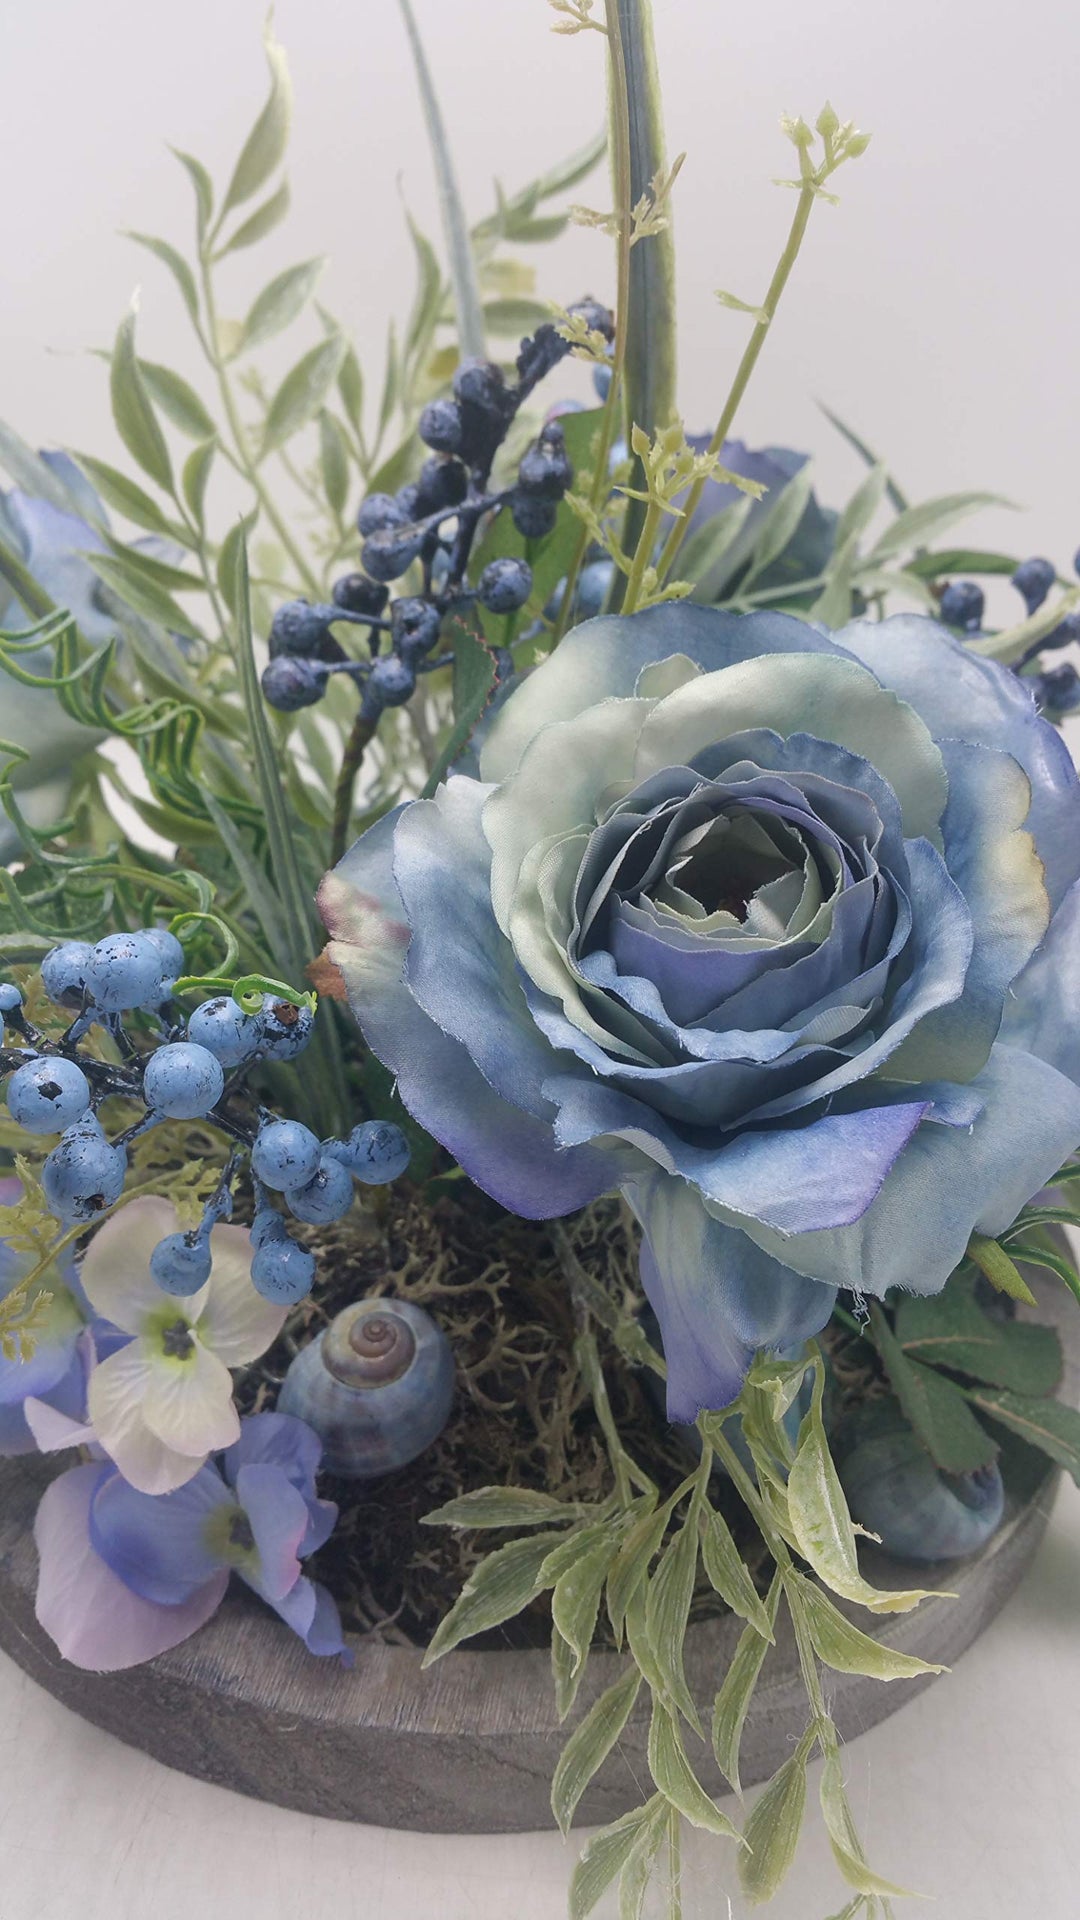 Tischgesteck Herbstgesteck Kunstfloristik Blumengesteck Rosen Beeren blau